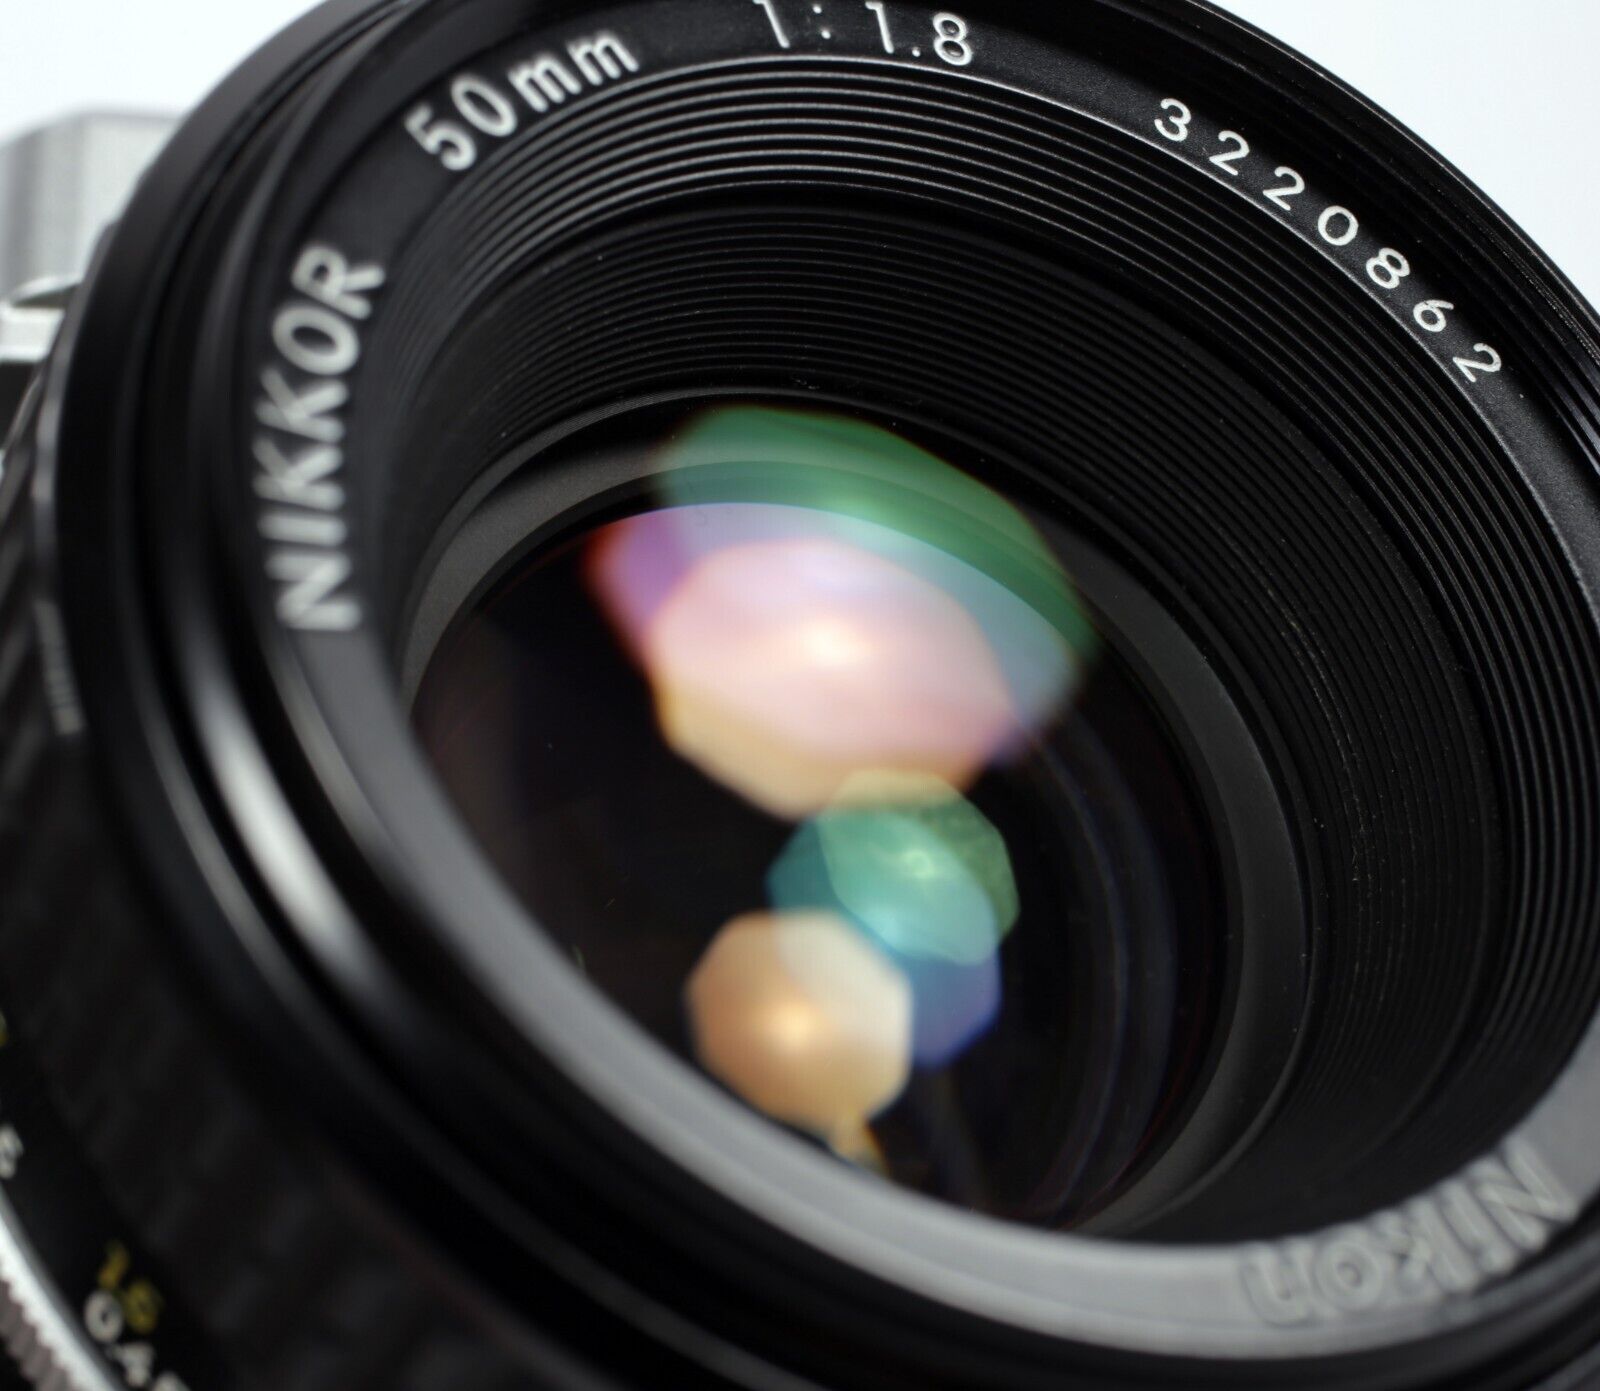 Nikon FE2 35mm SLR Film Camera with 50mm F1.8 Nikkor lens #128 